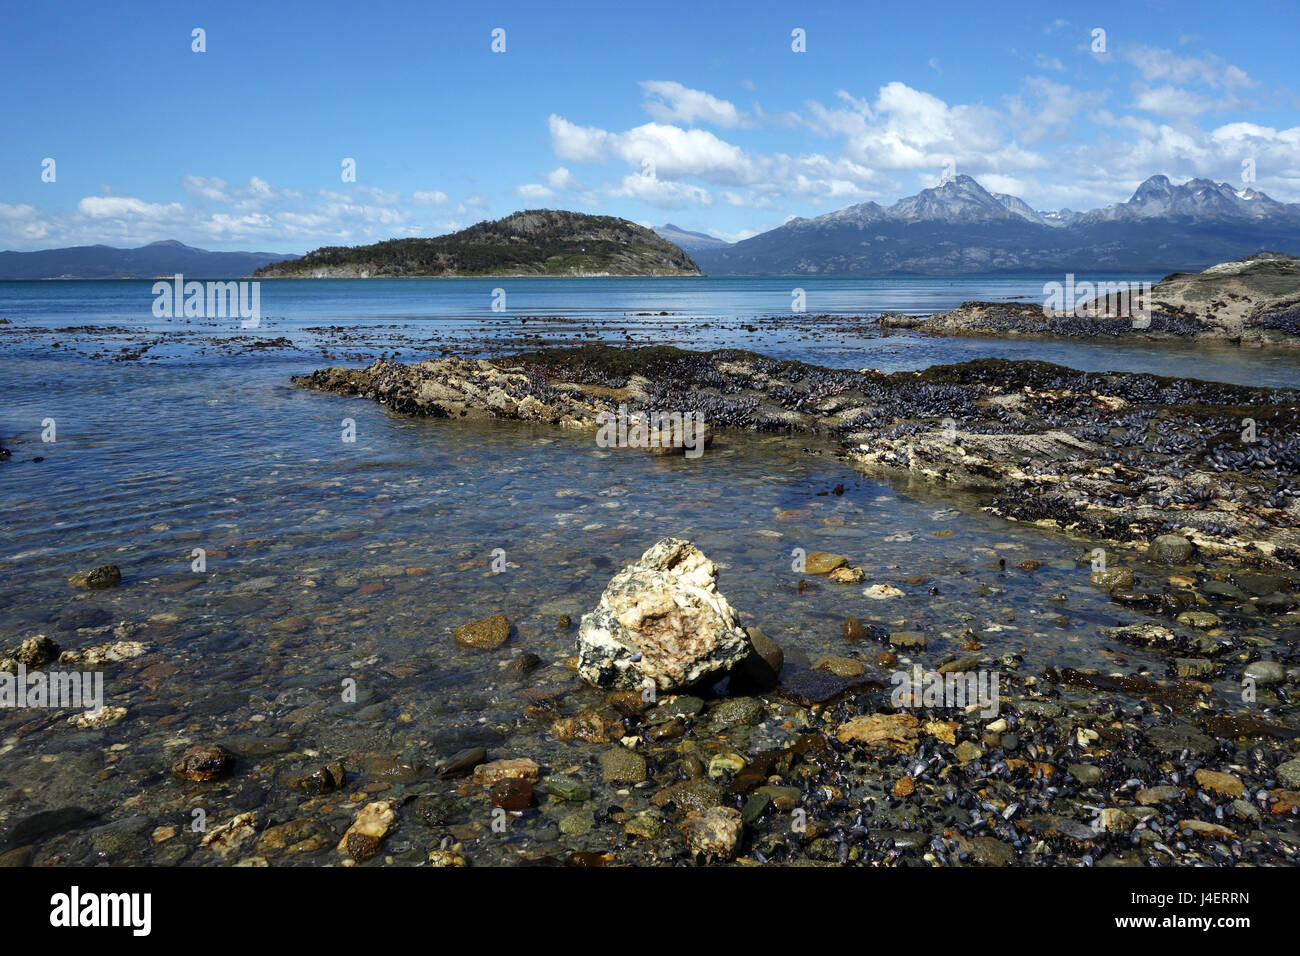 Coastal scene in the Tierra del Fuego National Park, Tierra del Fuego, Argentina, South America Stock Photo